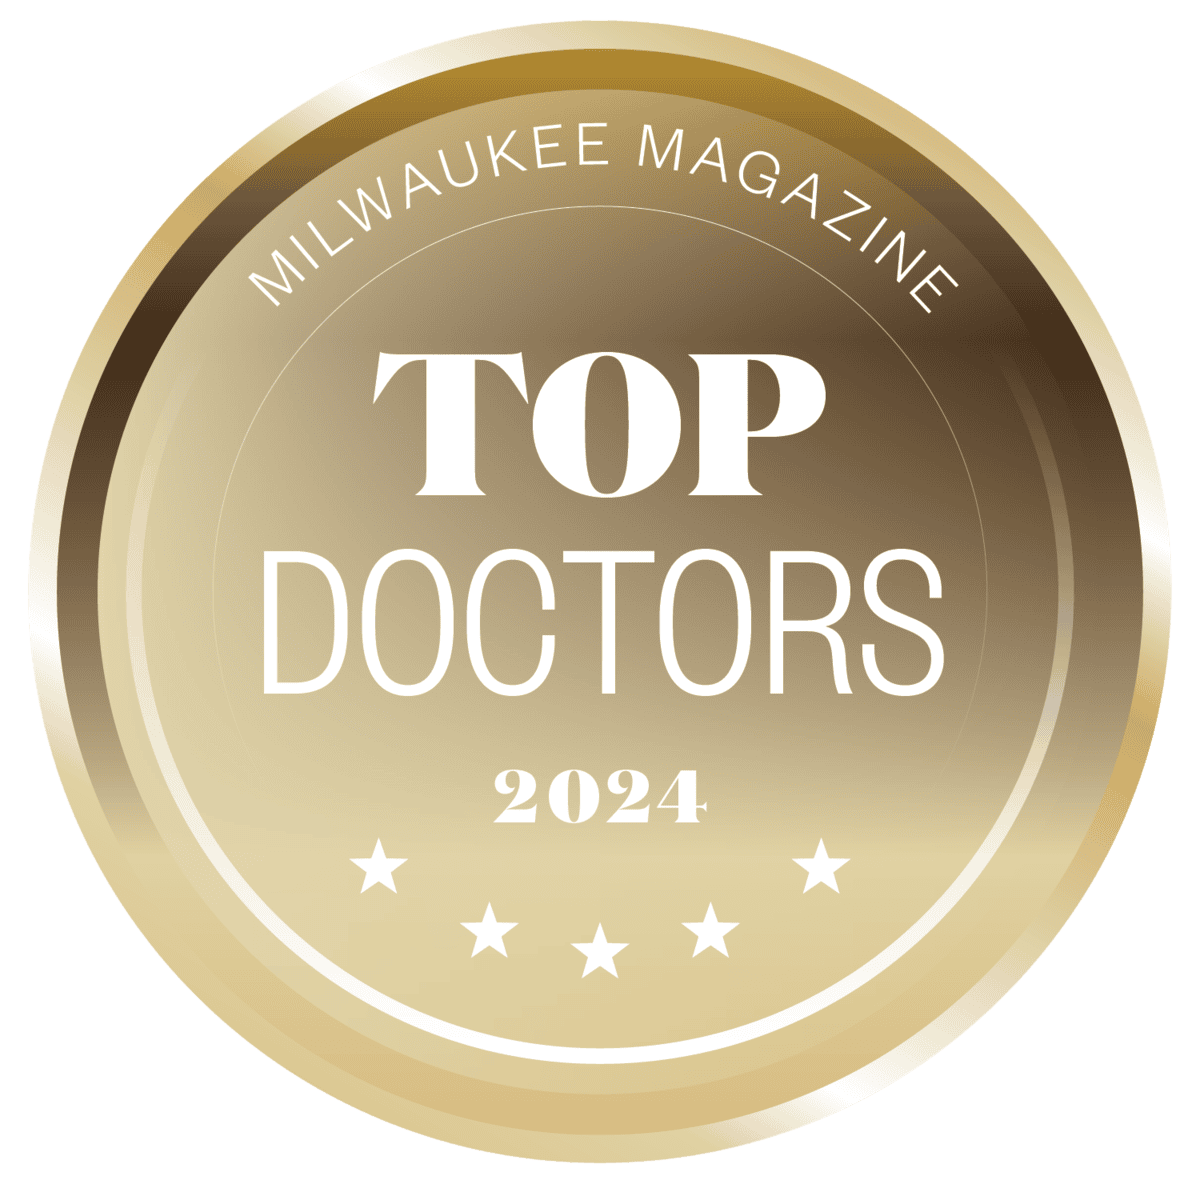 top doctors 2024 milwaukee magazine